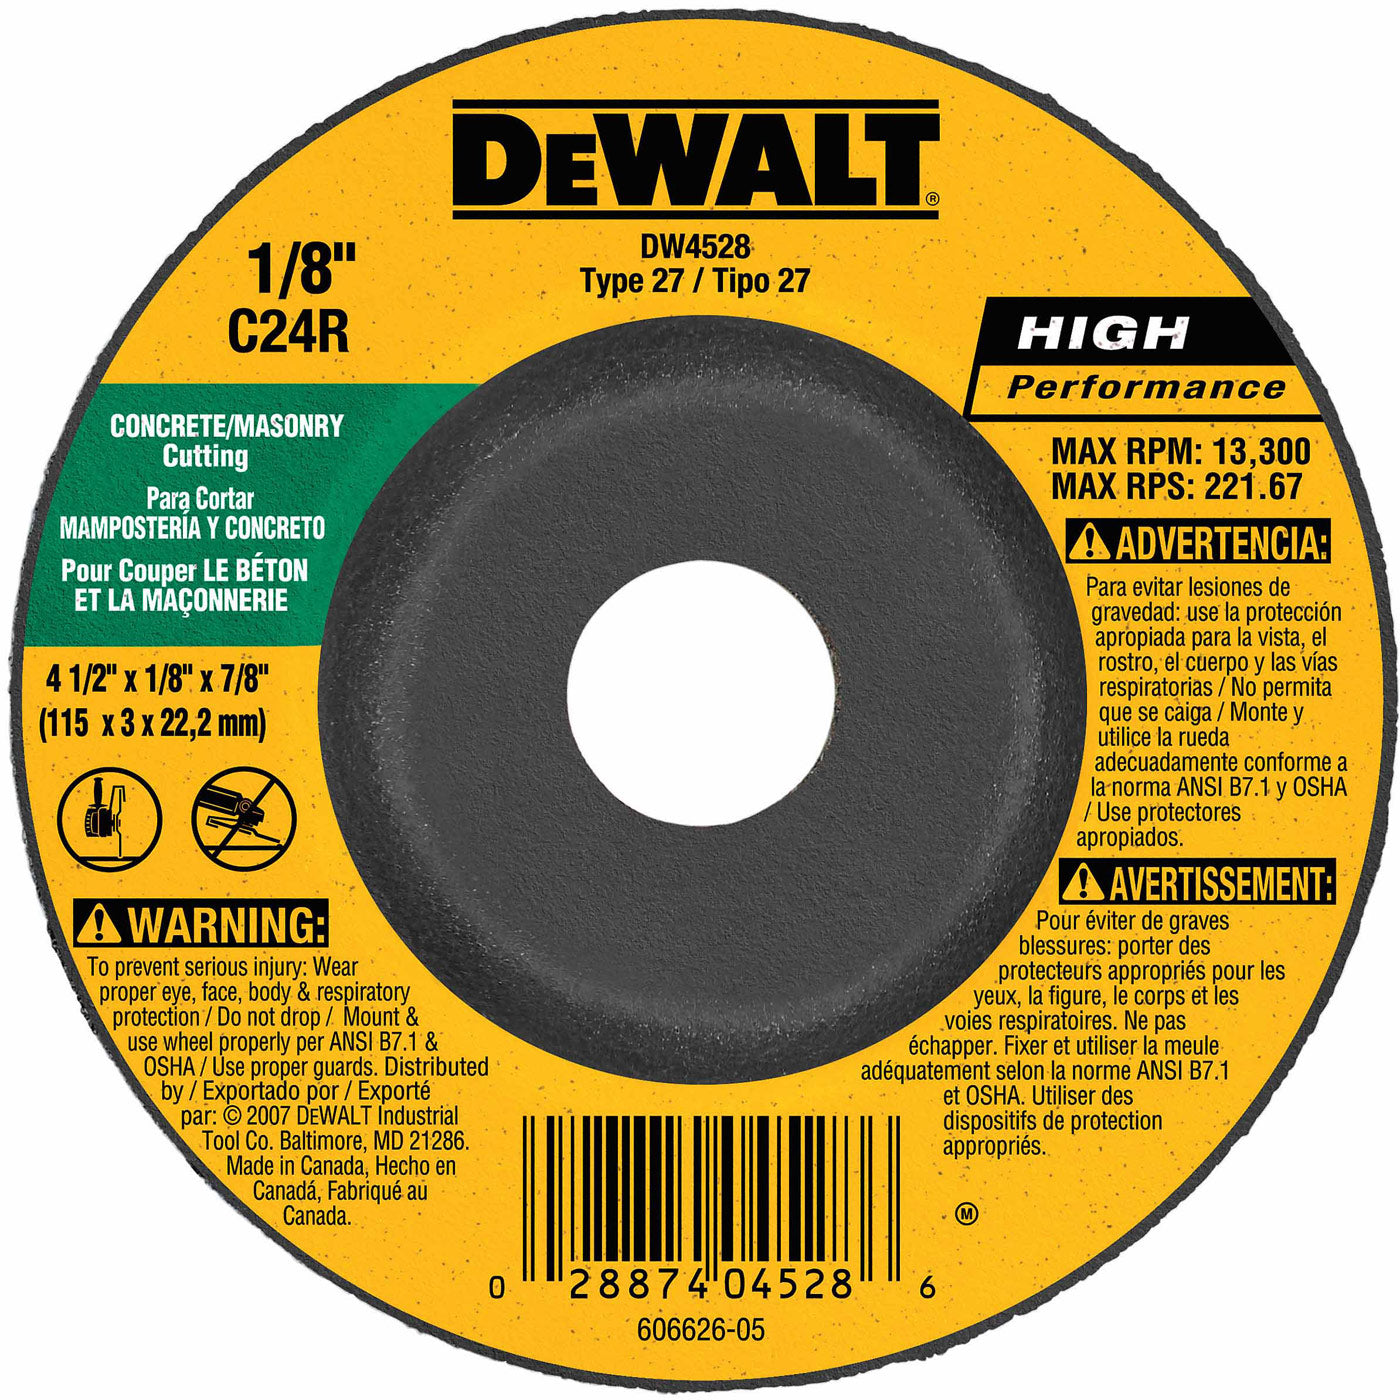 DeWalt DW4528 4-1/2" x 1/8" x 7/8" Concrete/Masonry Cutting Wheel